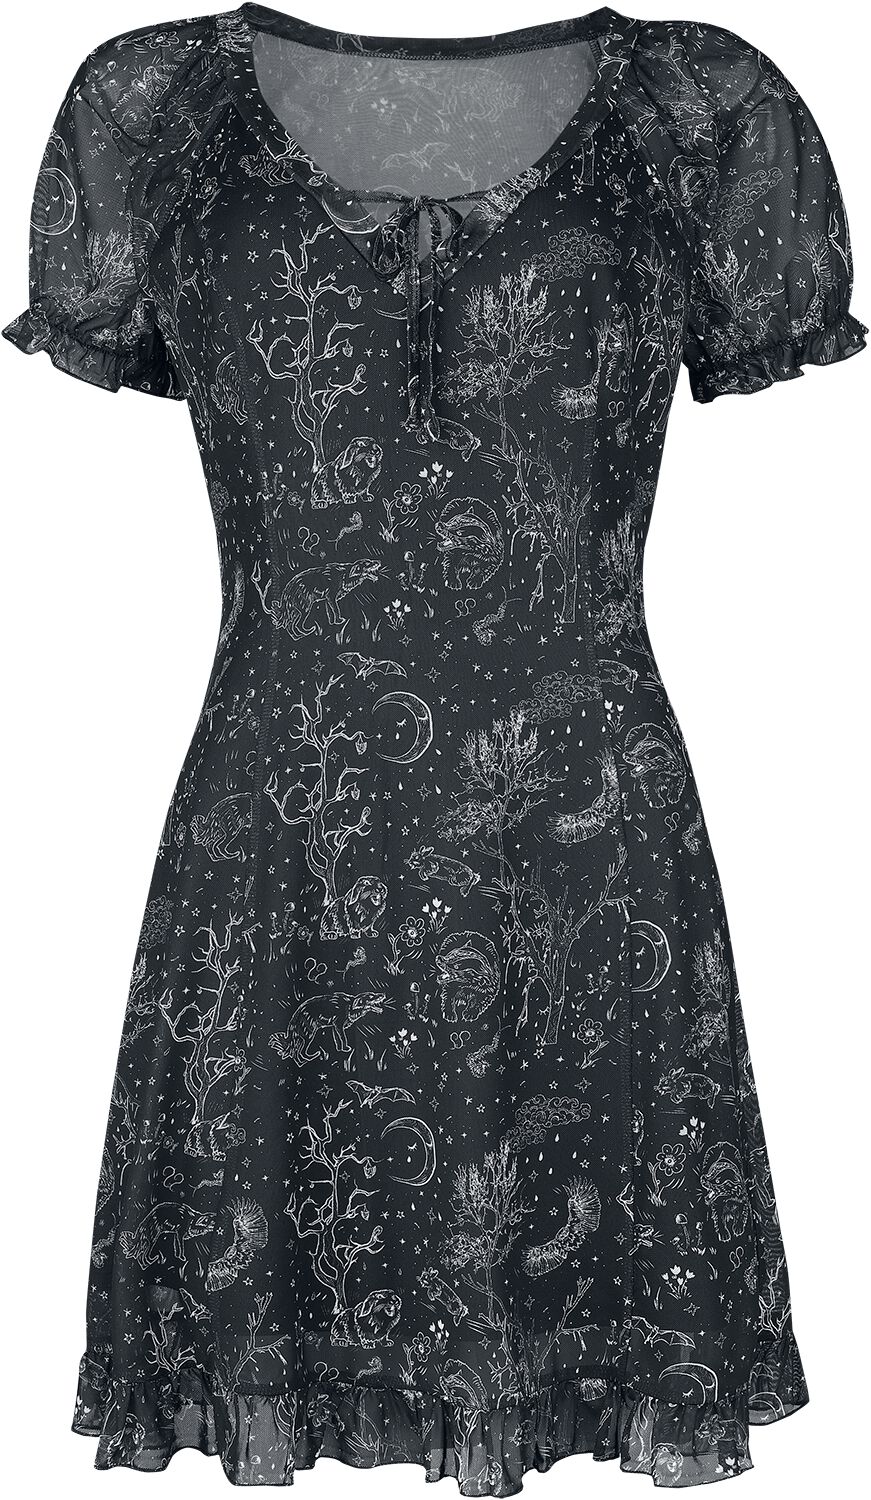 Jawbreaker Night Forest Mesh Dress Kurzes Kleid schwarz weiß in L